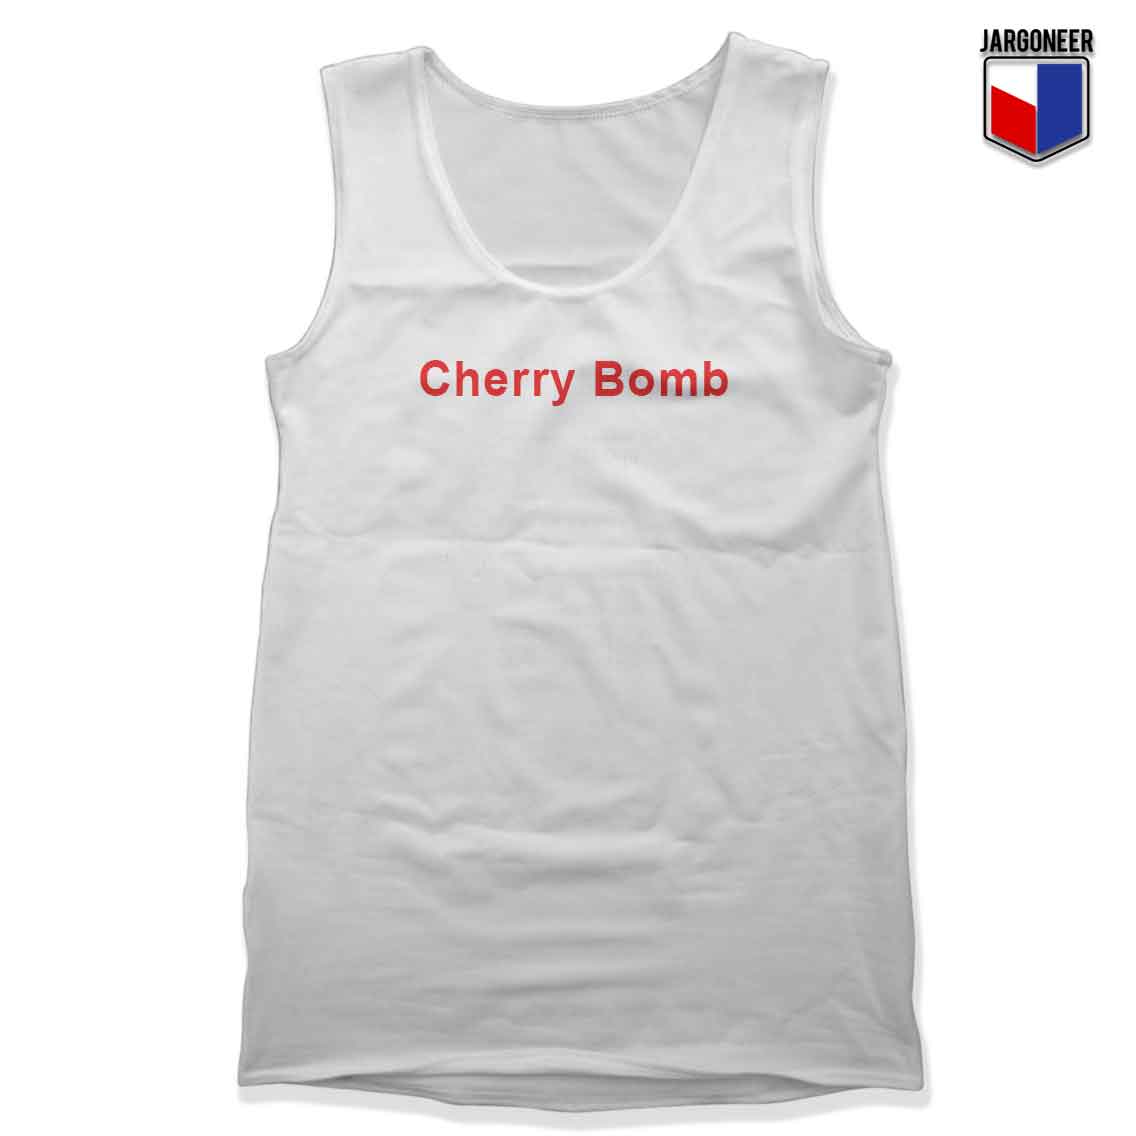 Cherry Bomb - Shop Unique Graphic Cool Shirt Designs